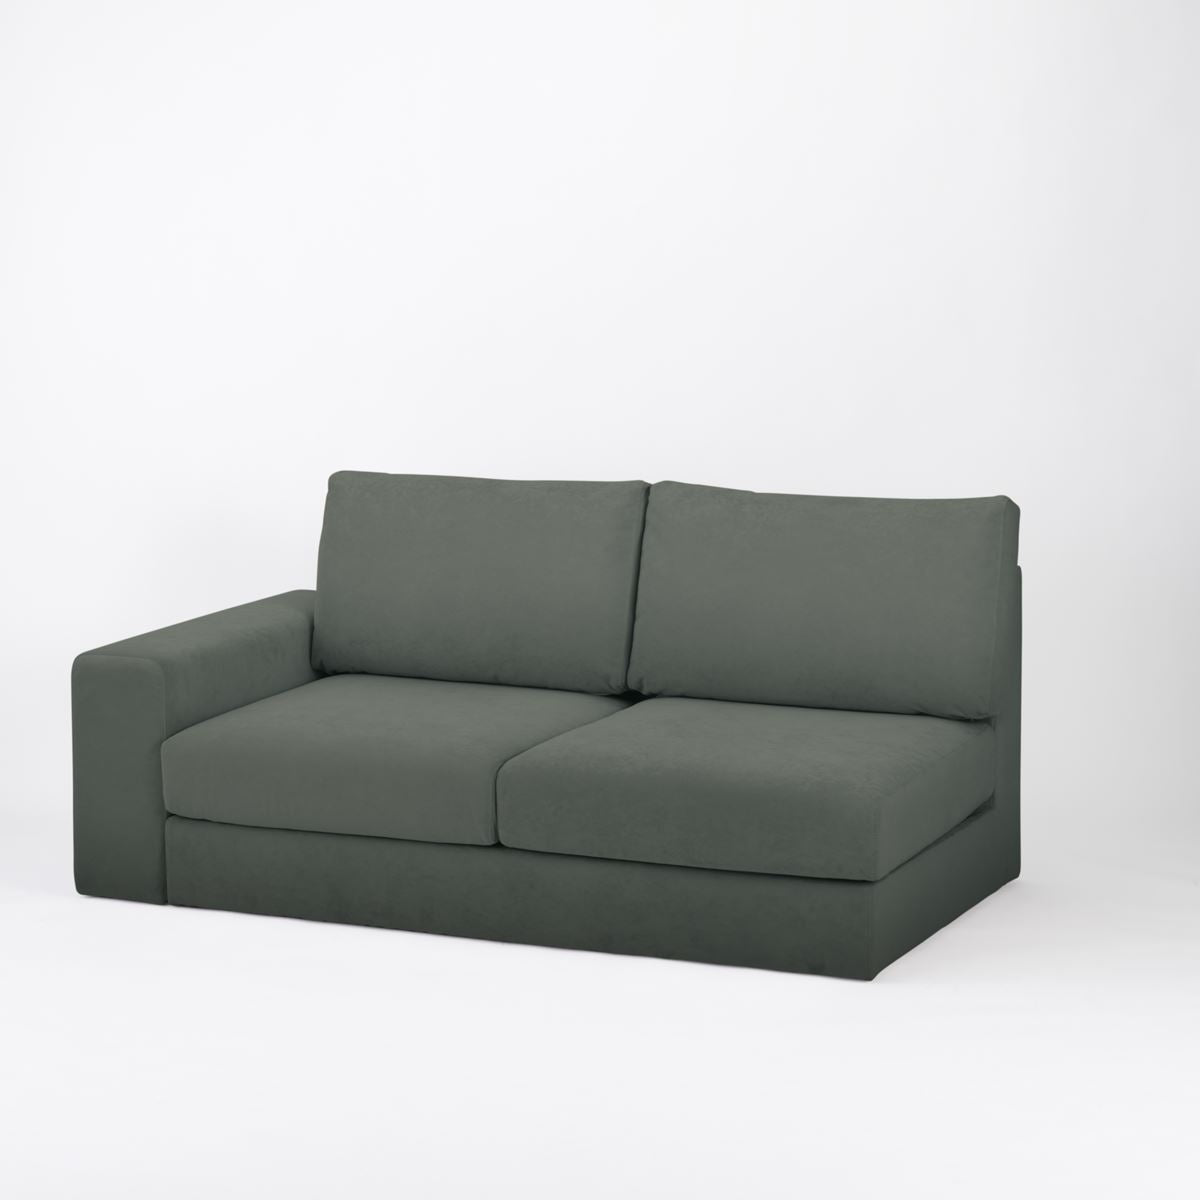 KUUM Sofa 2 seater One arm - Full Cover / クーム ソファ